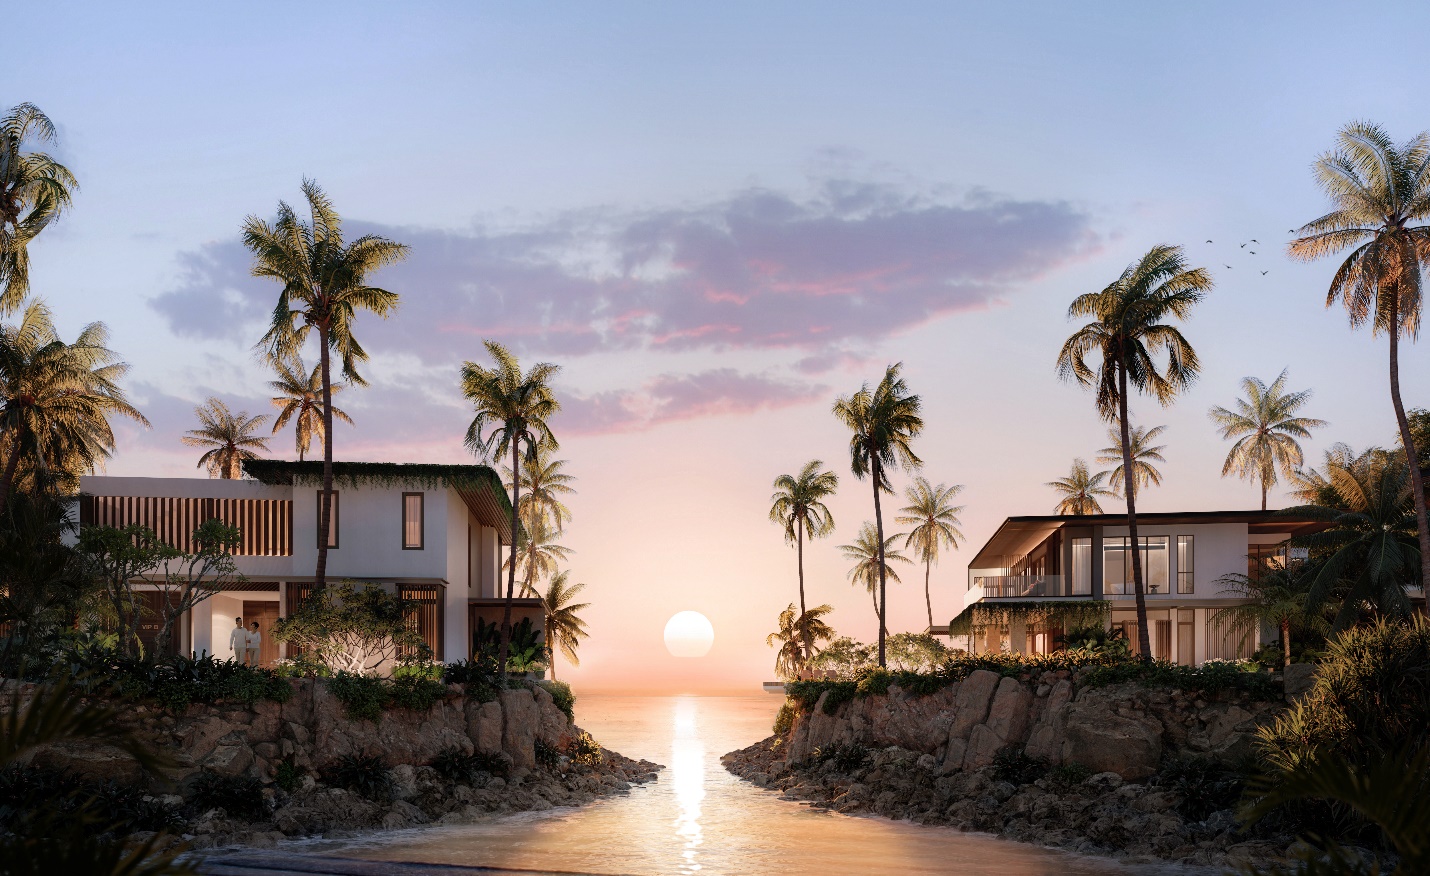 Những dinh thự triệu đô của Gran Meliá Nha Trang được đánh giá cao nhờ vào tầm nhìn bao trọn hoàng hôn tuyệt mỹ trên vịnh biển đẹp nhất Việt Nam.